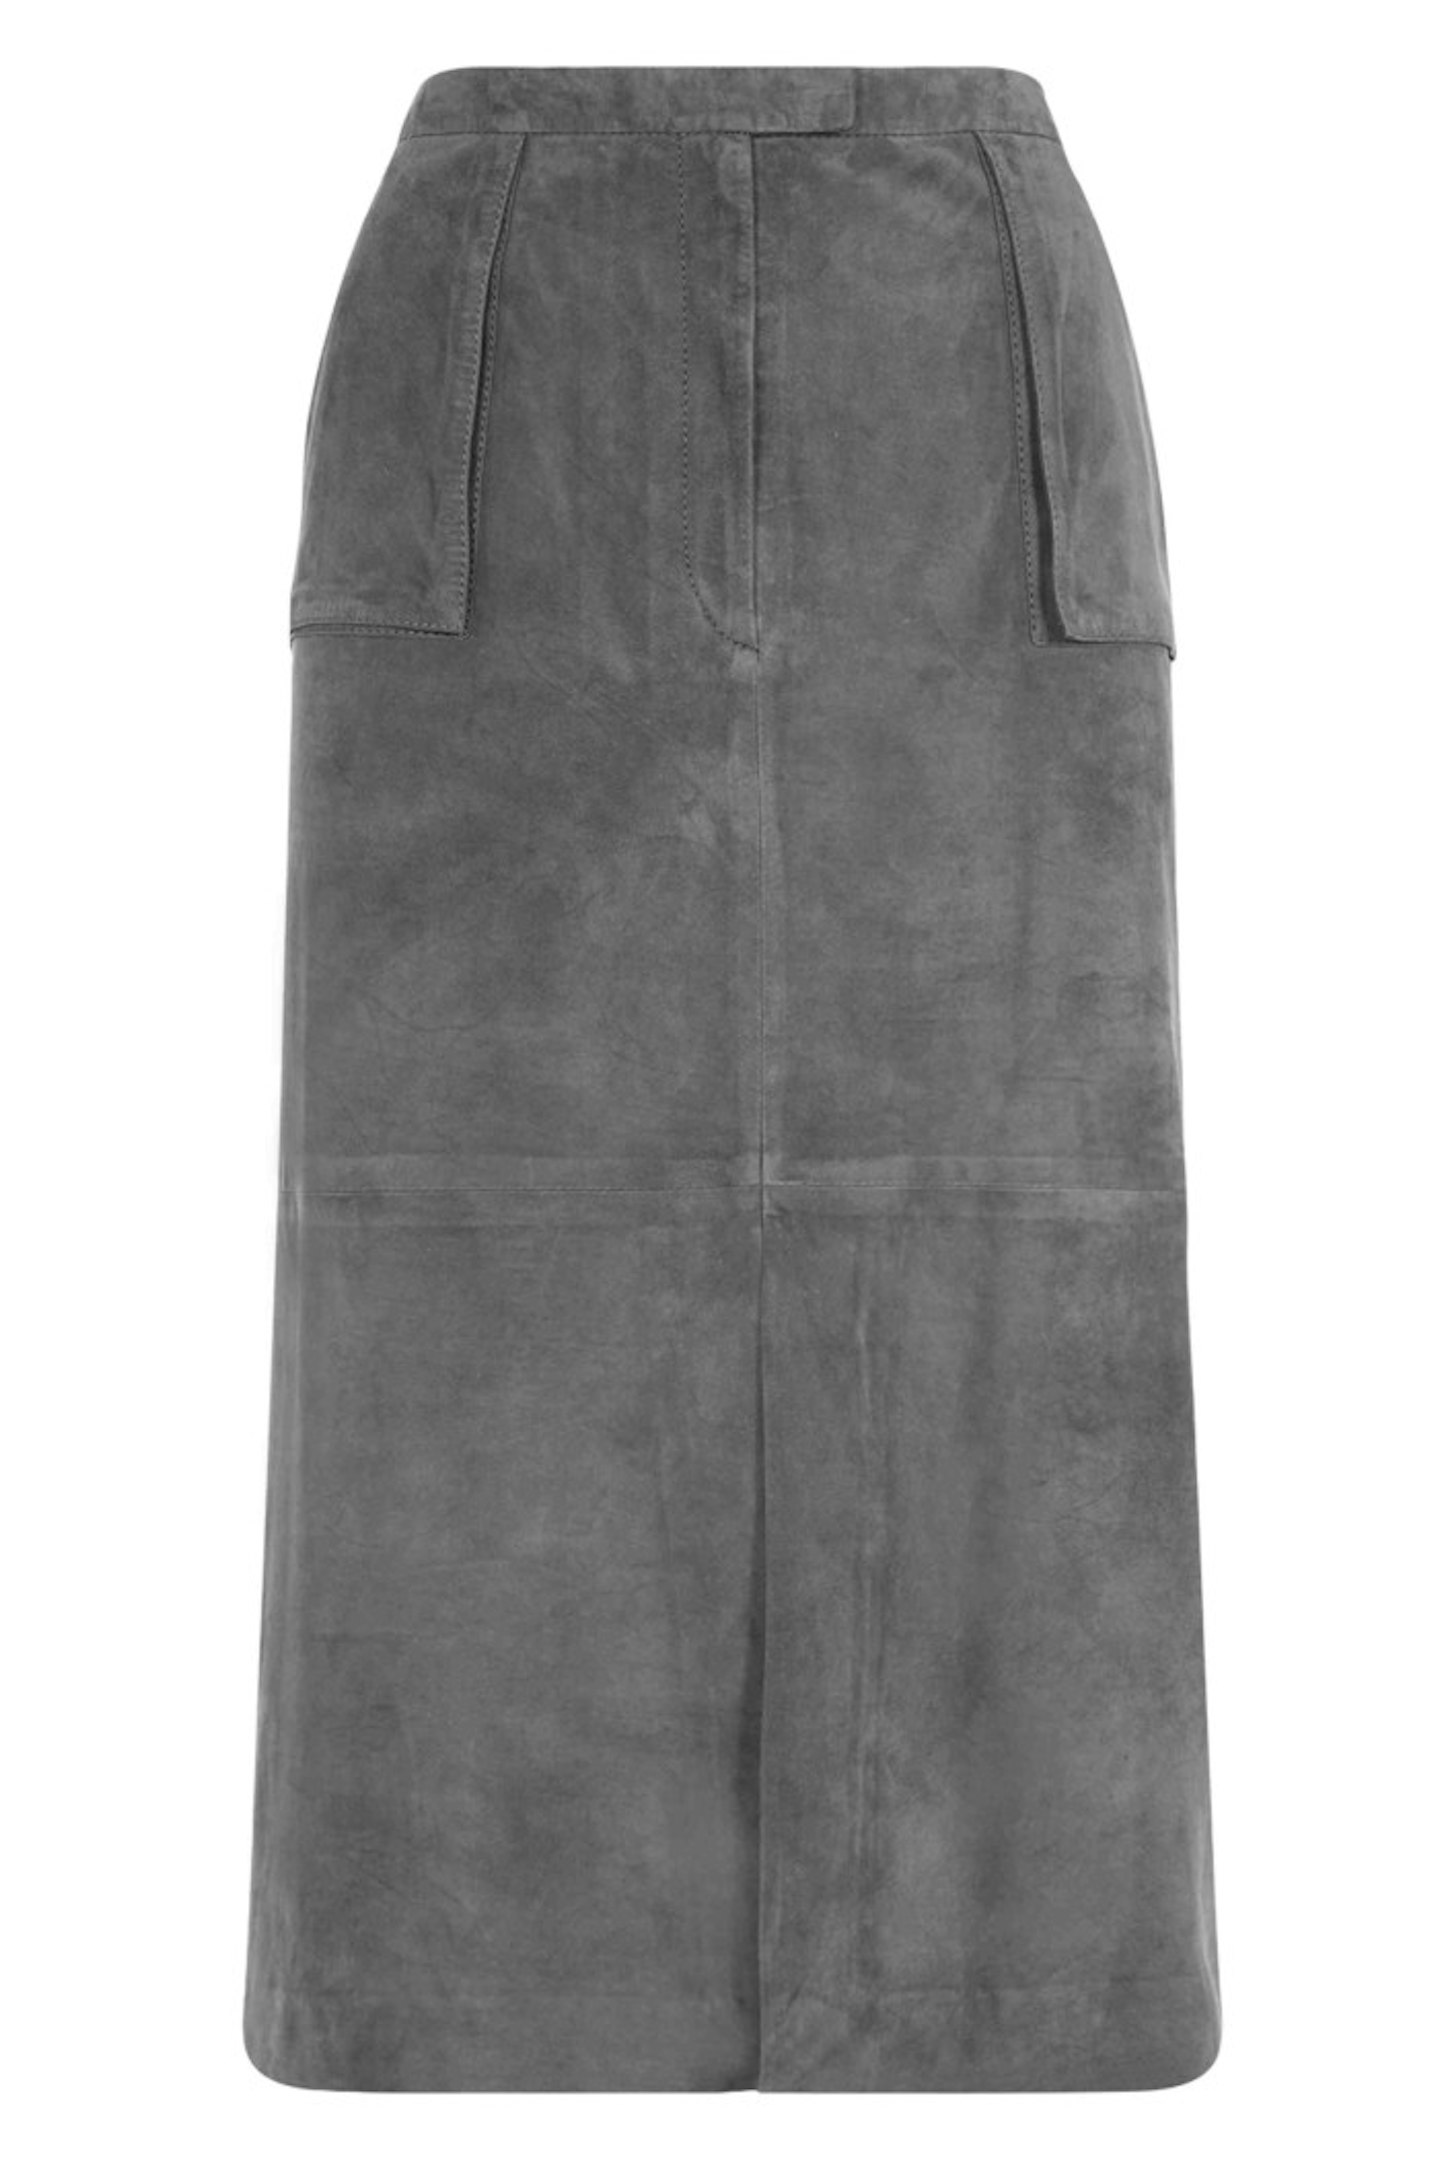 Grey Suede Skirt, Jaeger, £350